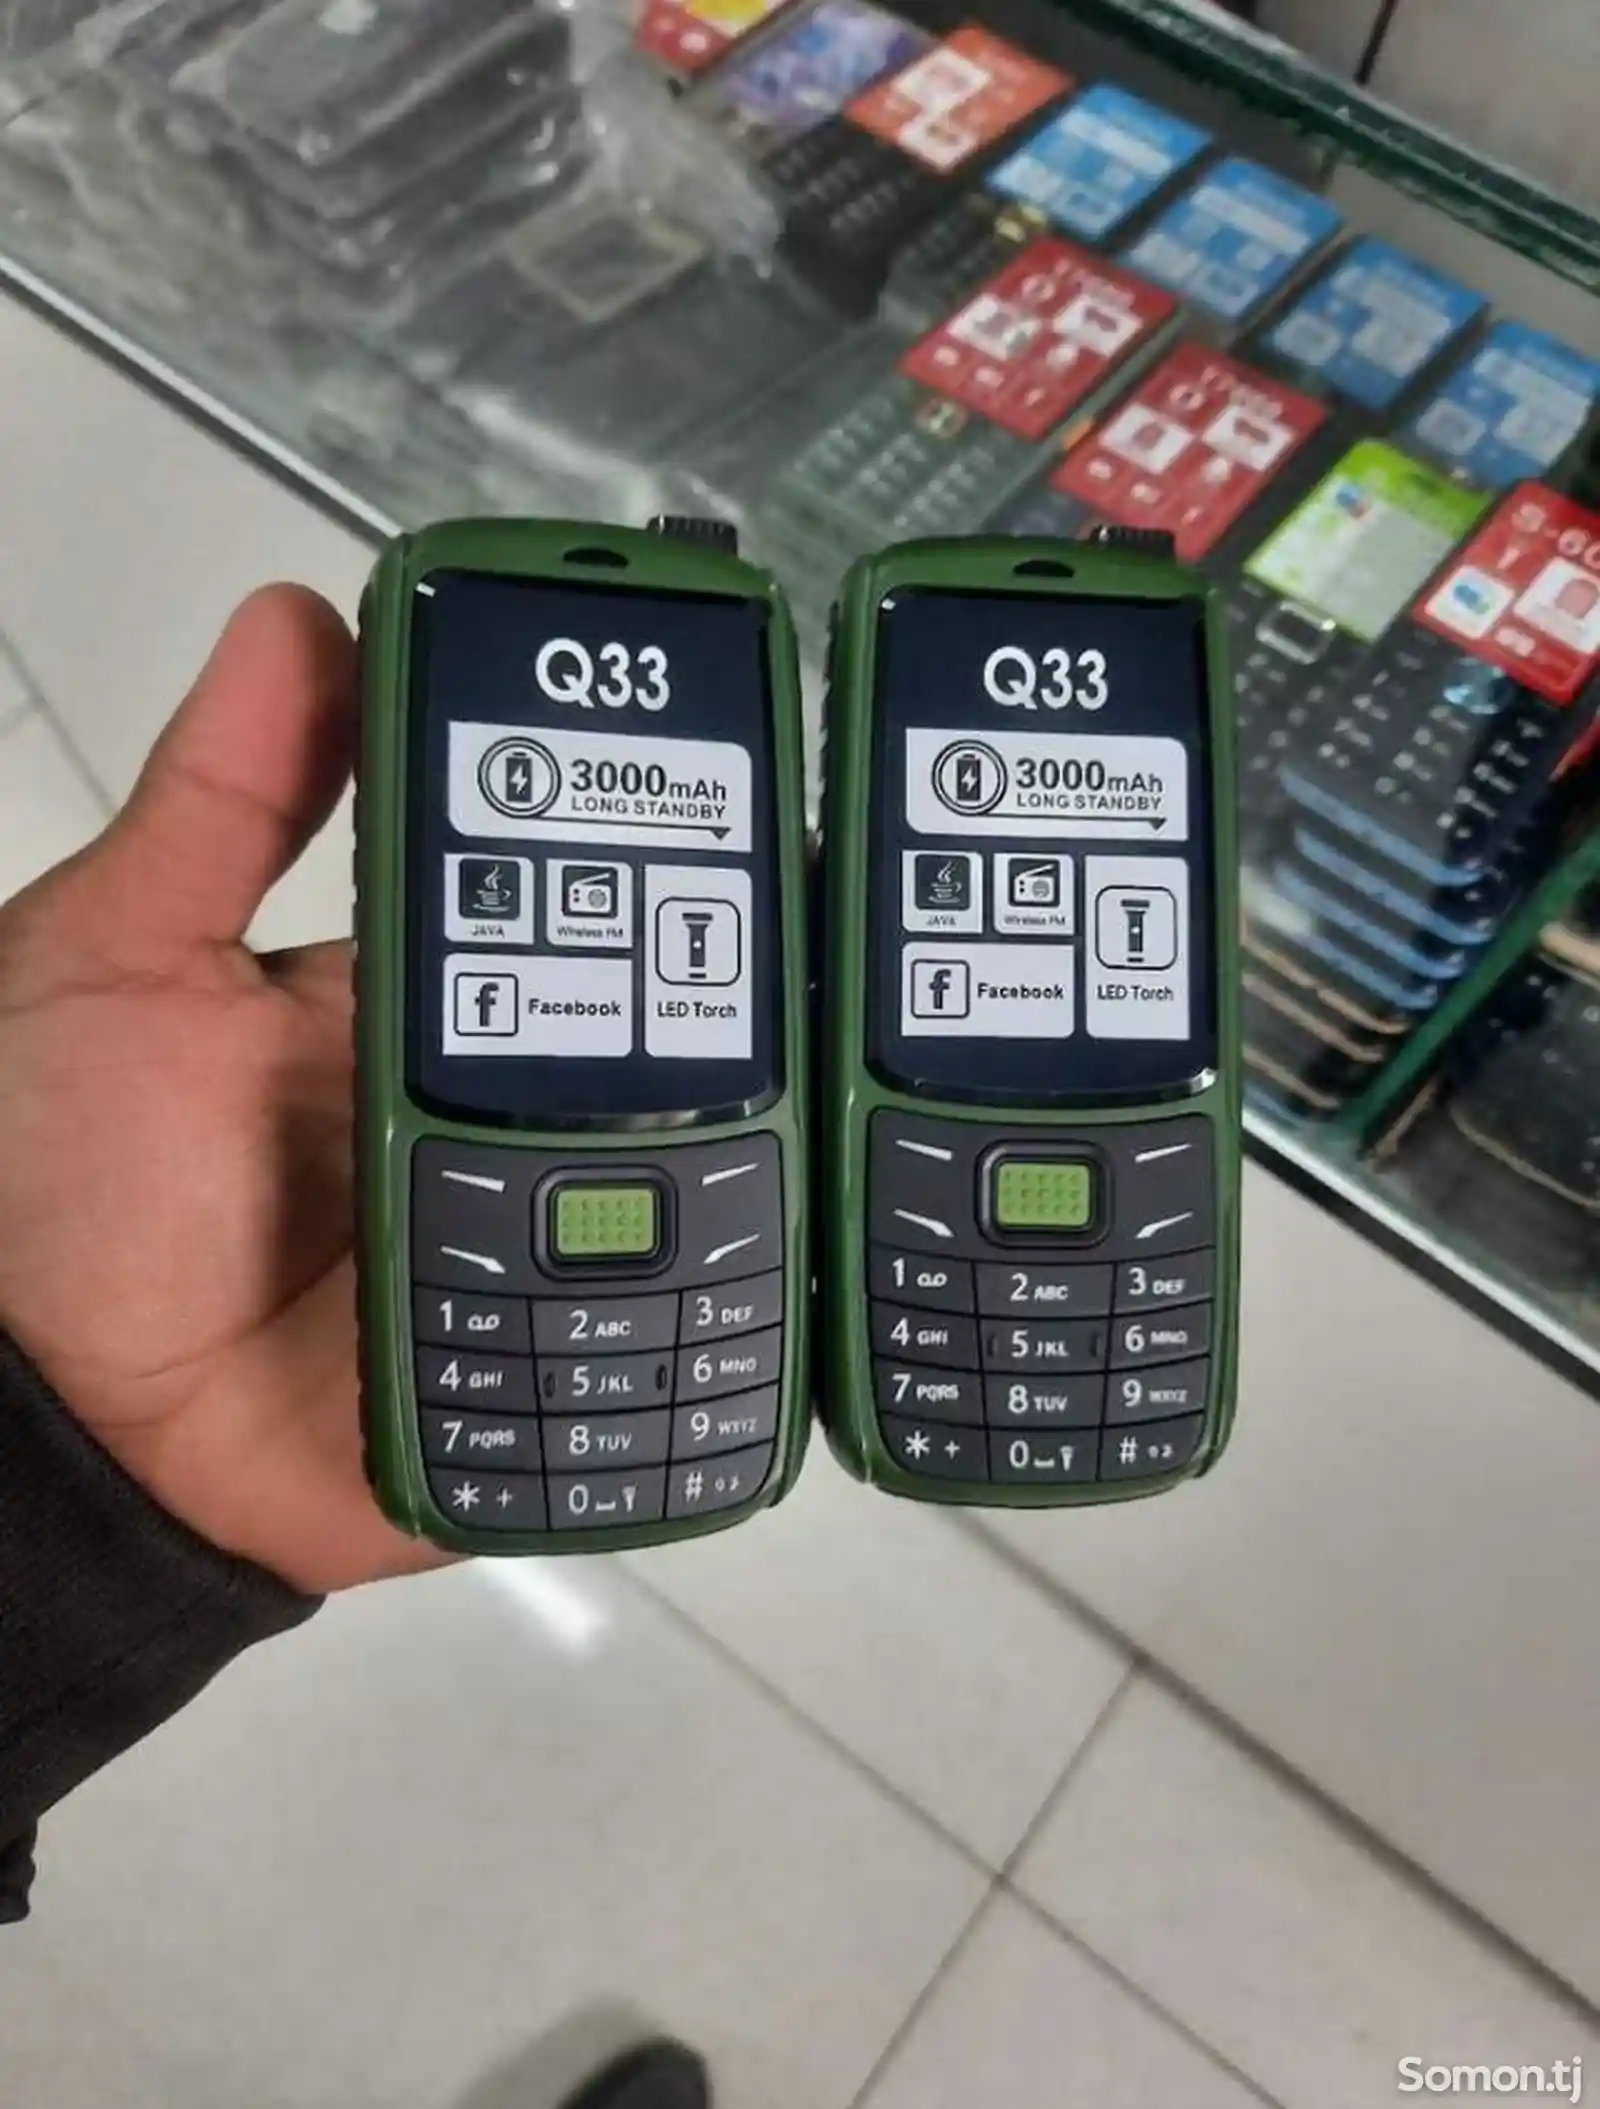 Nokia Q33/Q36 duos-1